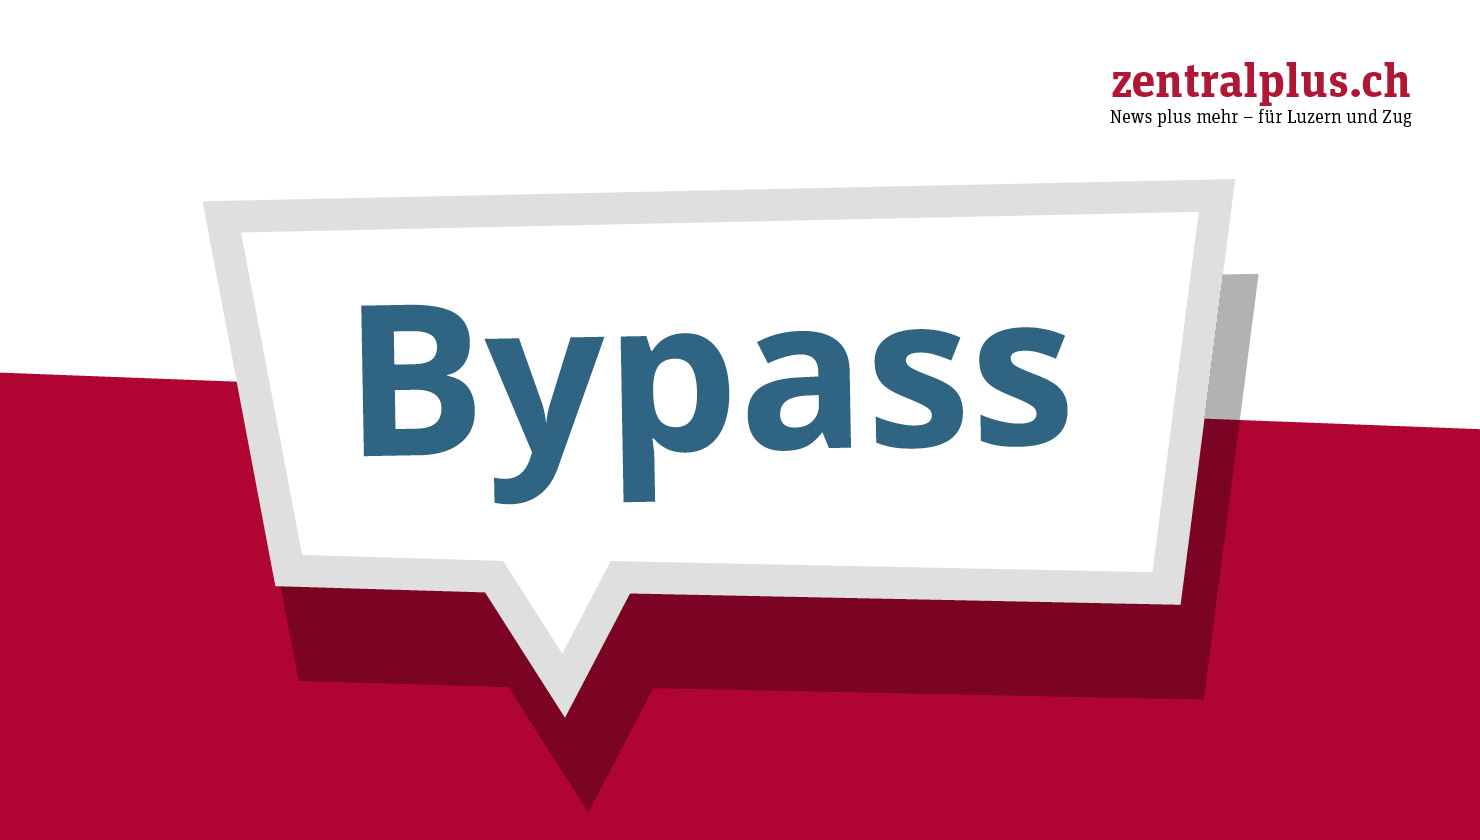 zentralplus Podium: Wie wird der Bypass Luzern verändern?